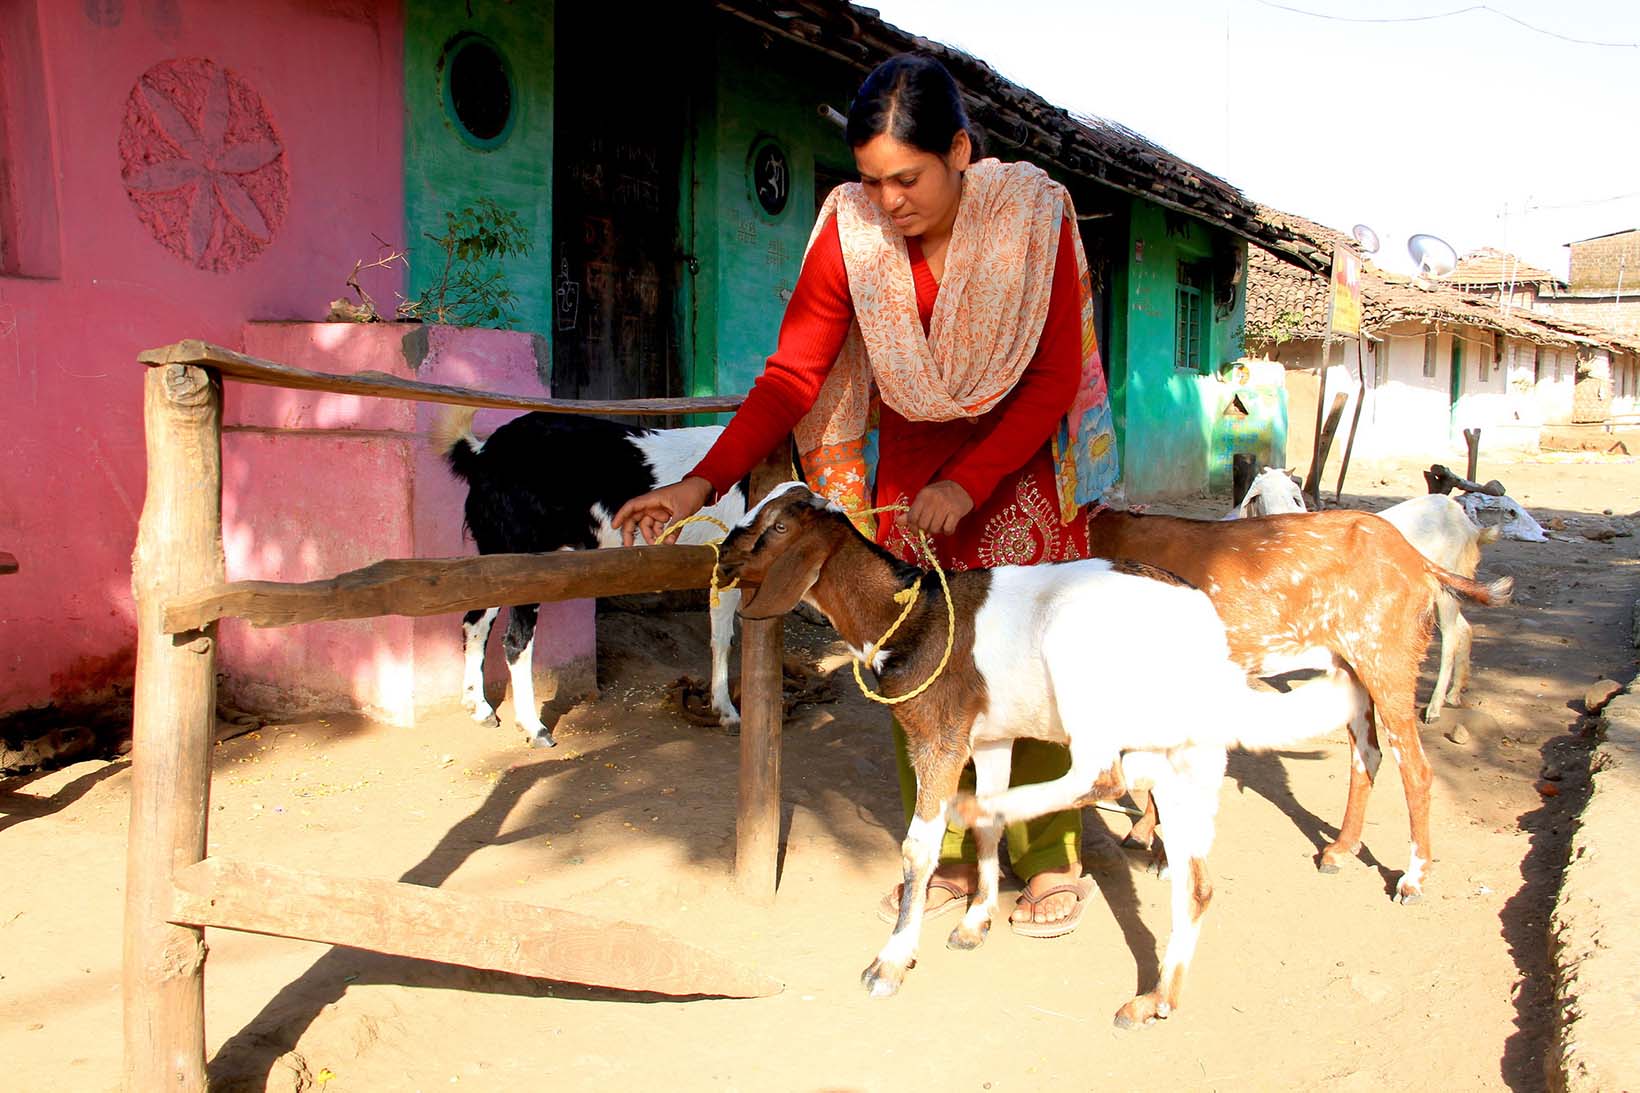  Une femme en Inde attache une chèvre à un piquet en bois. A l'arrière-plan se trouvent d'autres chèvres.